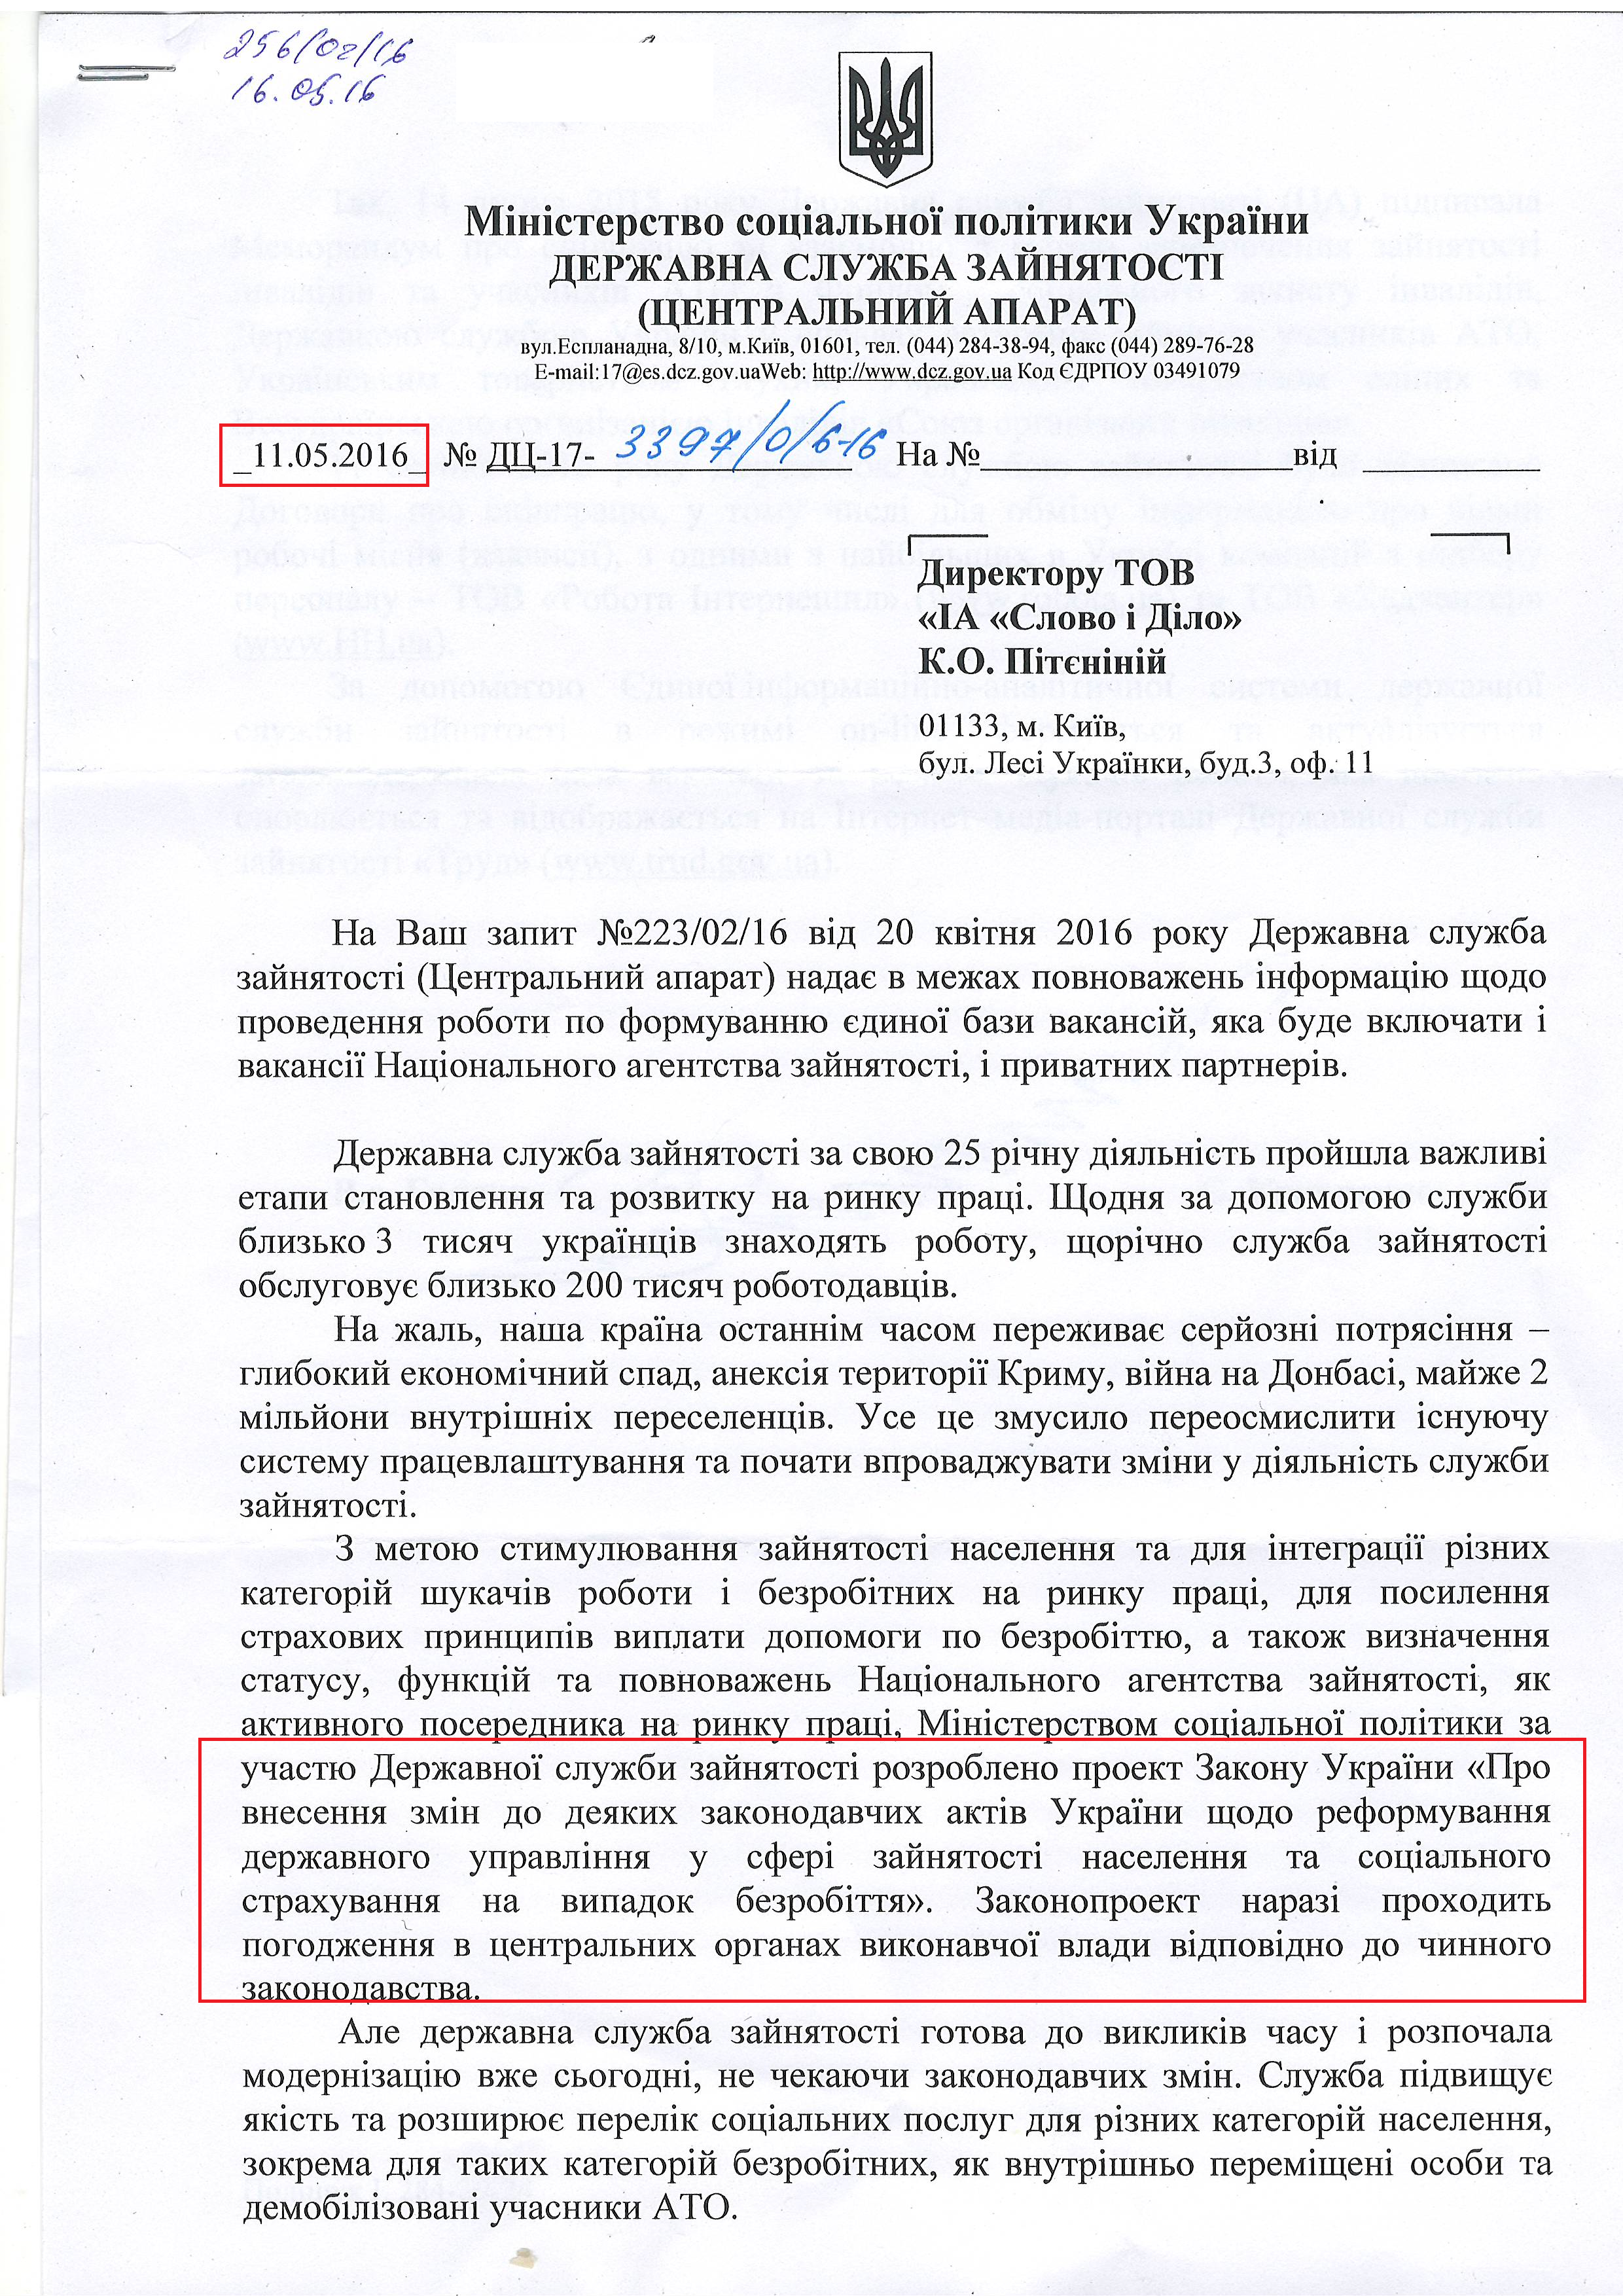 Лист Міністерства соціальної політики України від 11 травня 2016 року